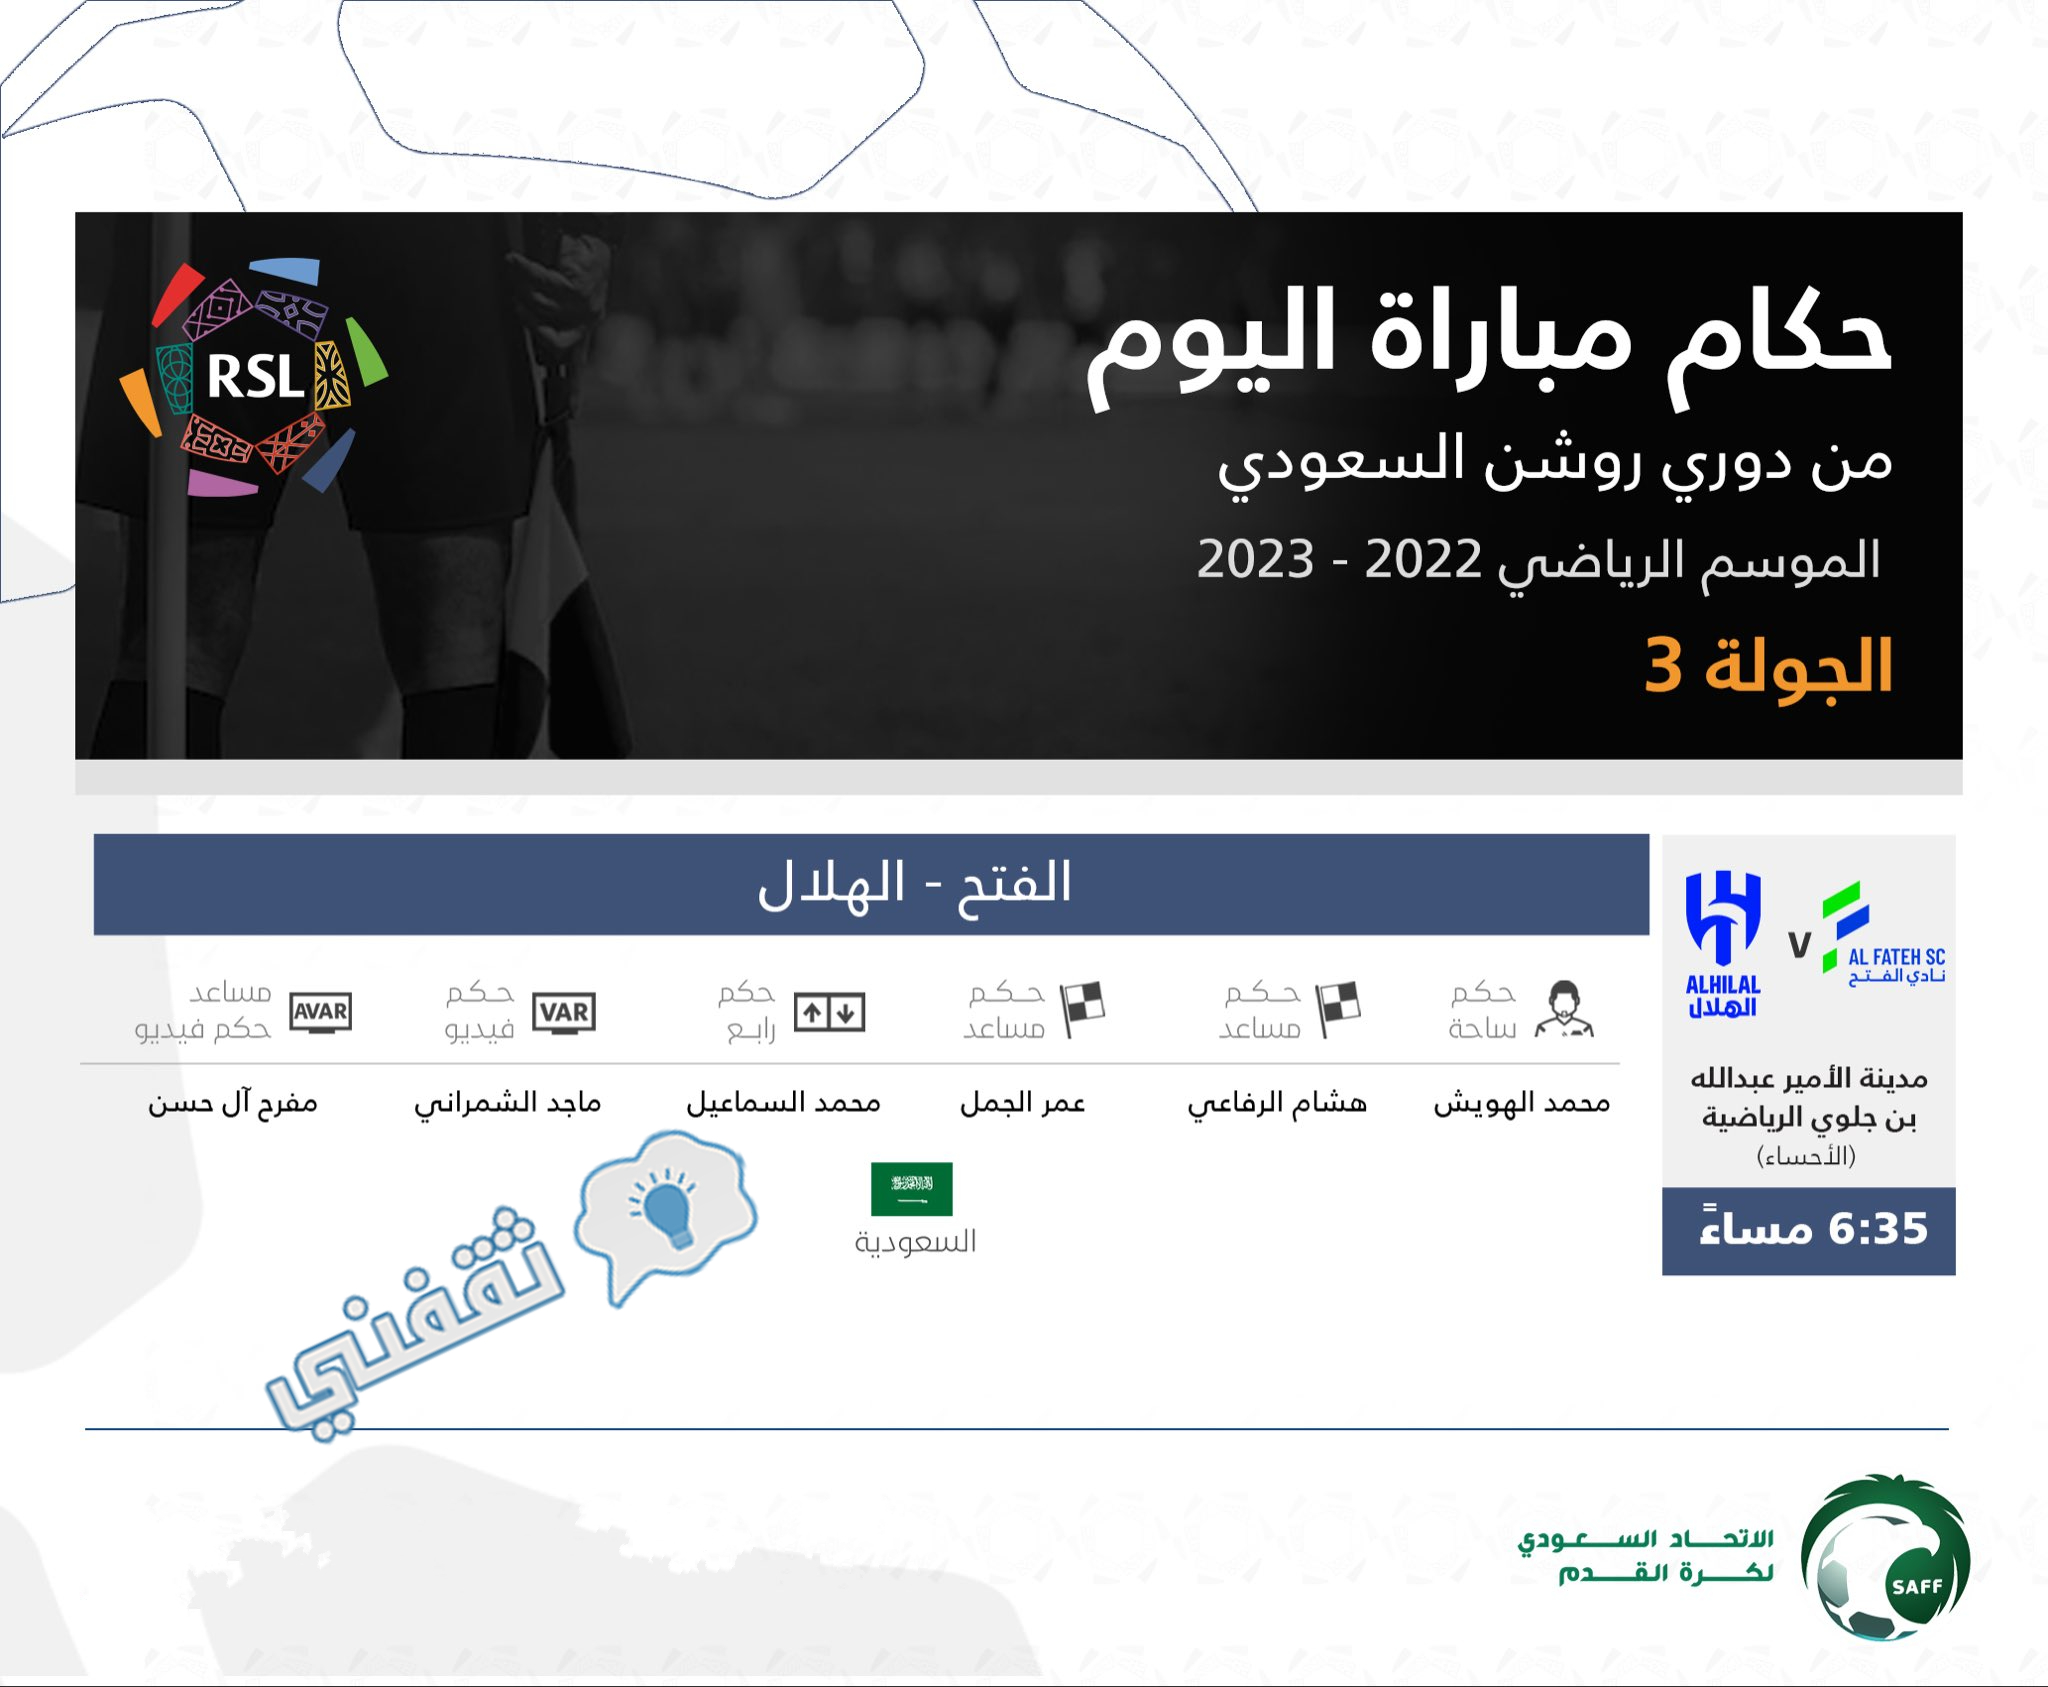 حكم مباراة الفتح والهلال في افتتاح مباريات الجولة الثالثة من دوري روشن السعودي للمحترفين 2023